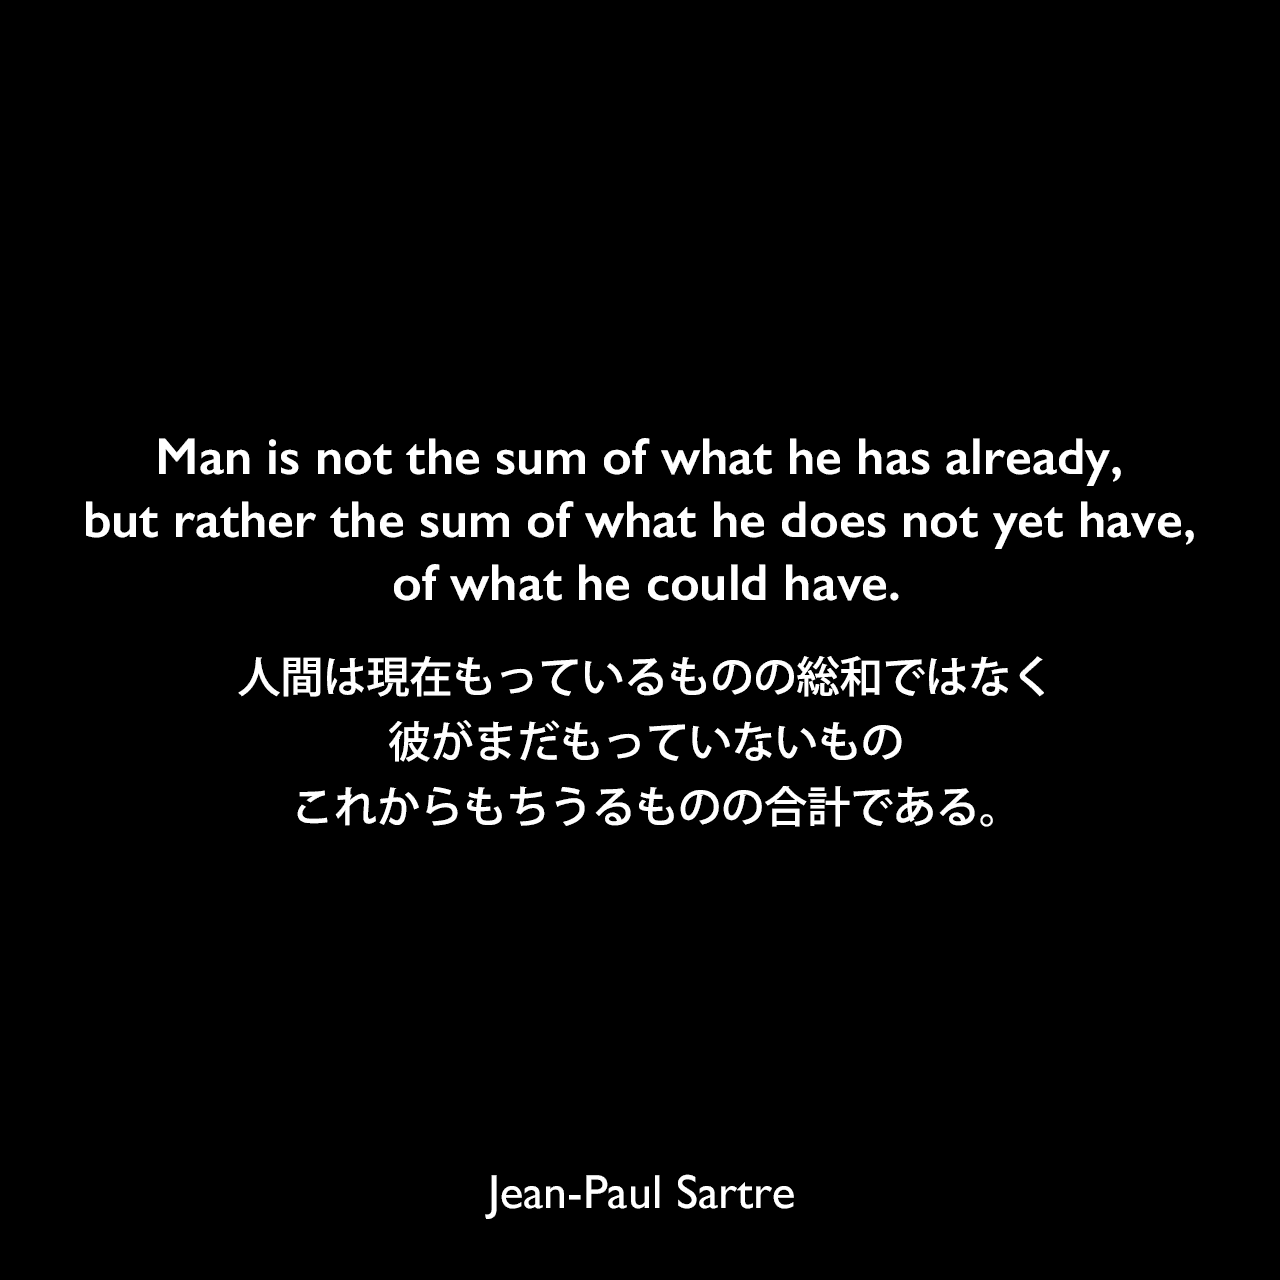 Man is not the sum of what he has already, but rather the sum of what he does not yet have, of what he could have.人間は現在もっているものの総和ではなく、彼がまだもっていないもの、これからもちうるものの合計である。Jean-Paul Sartre